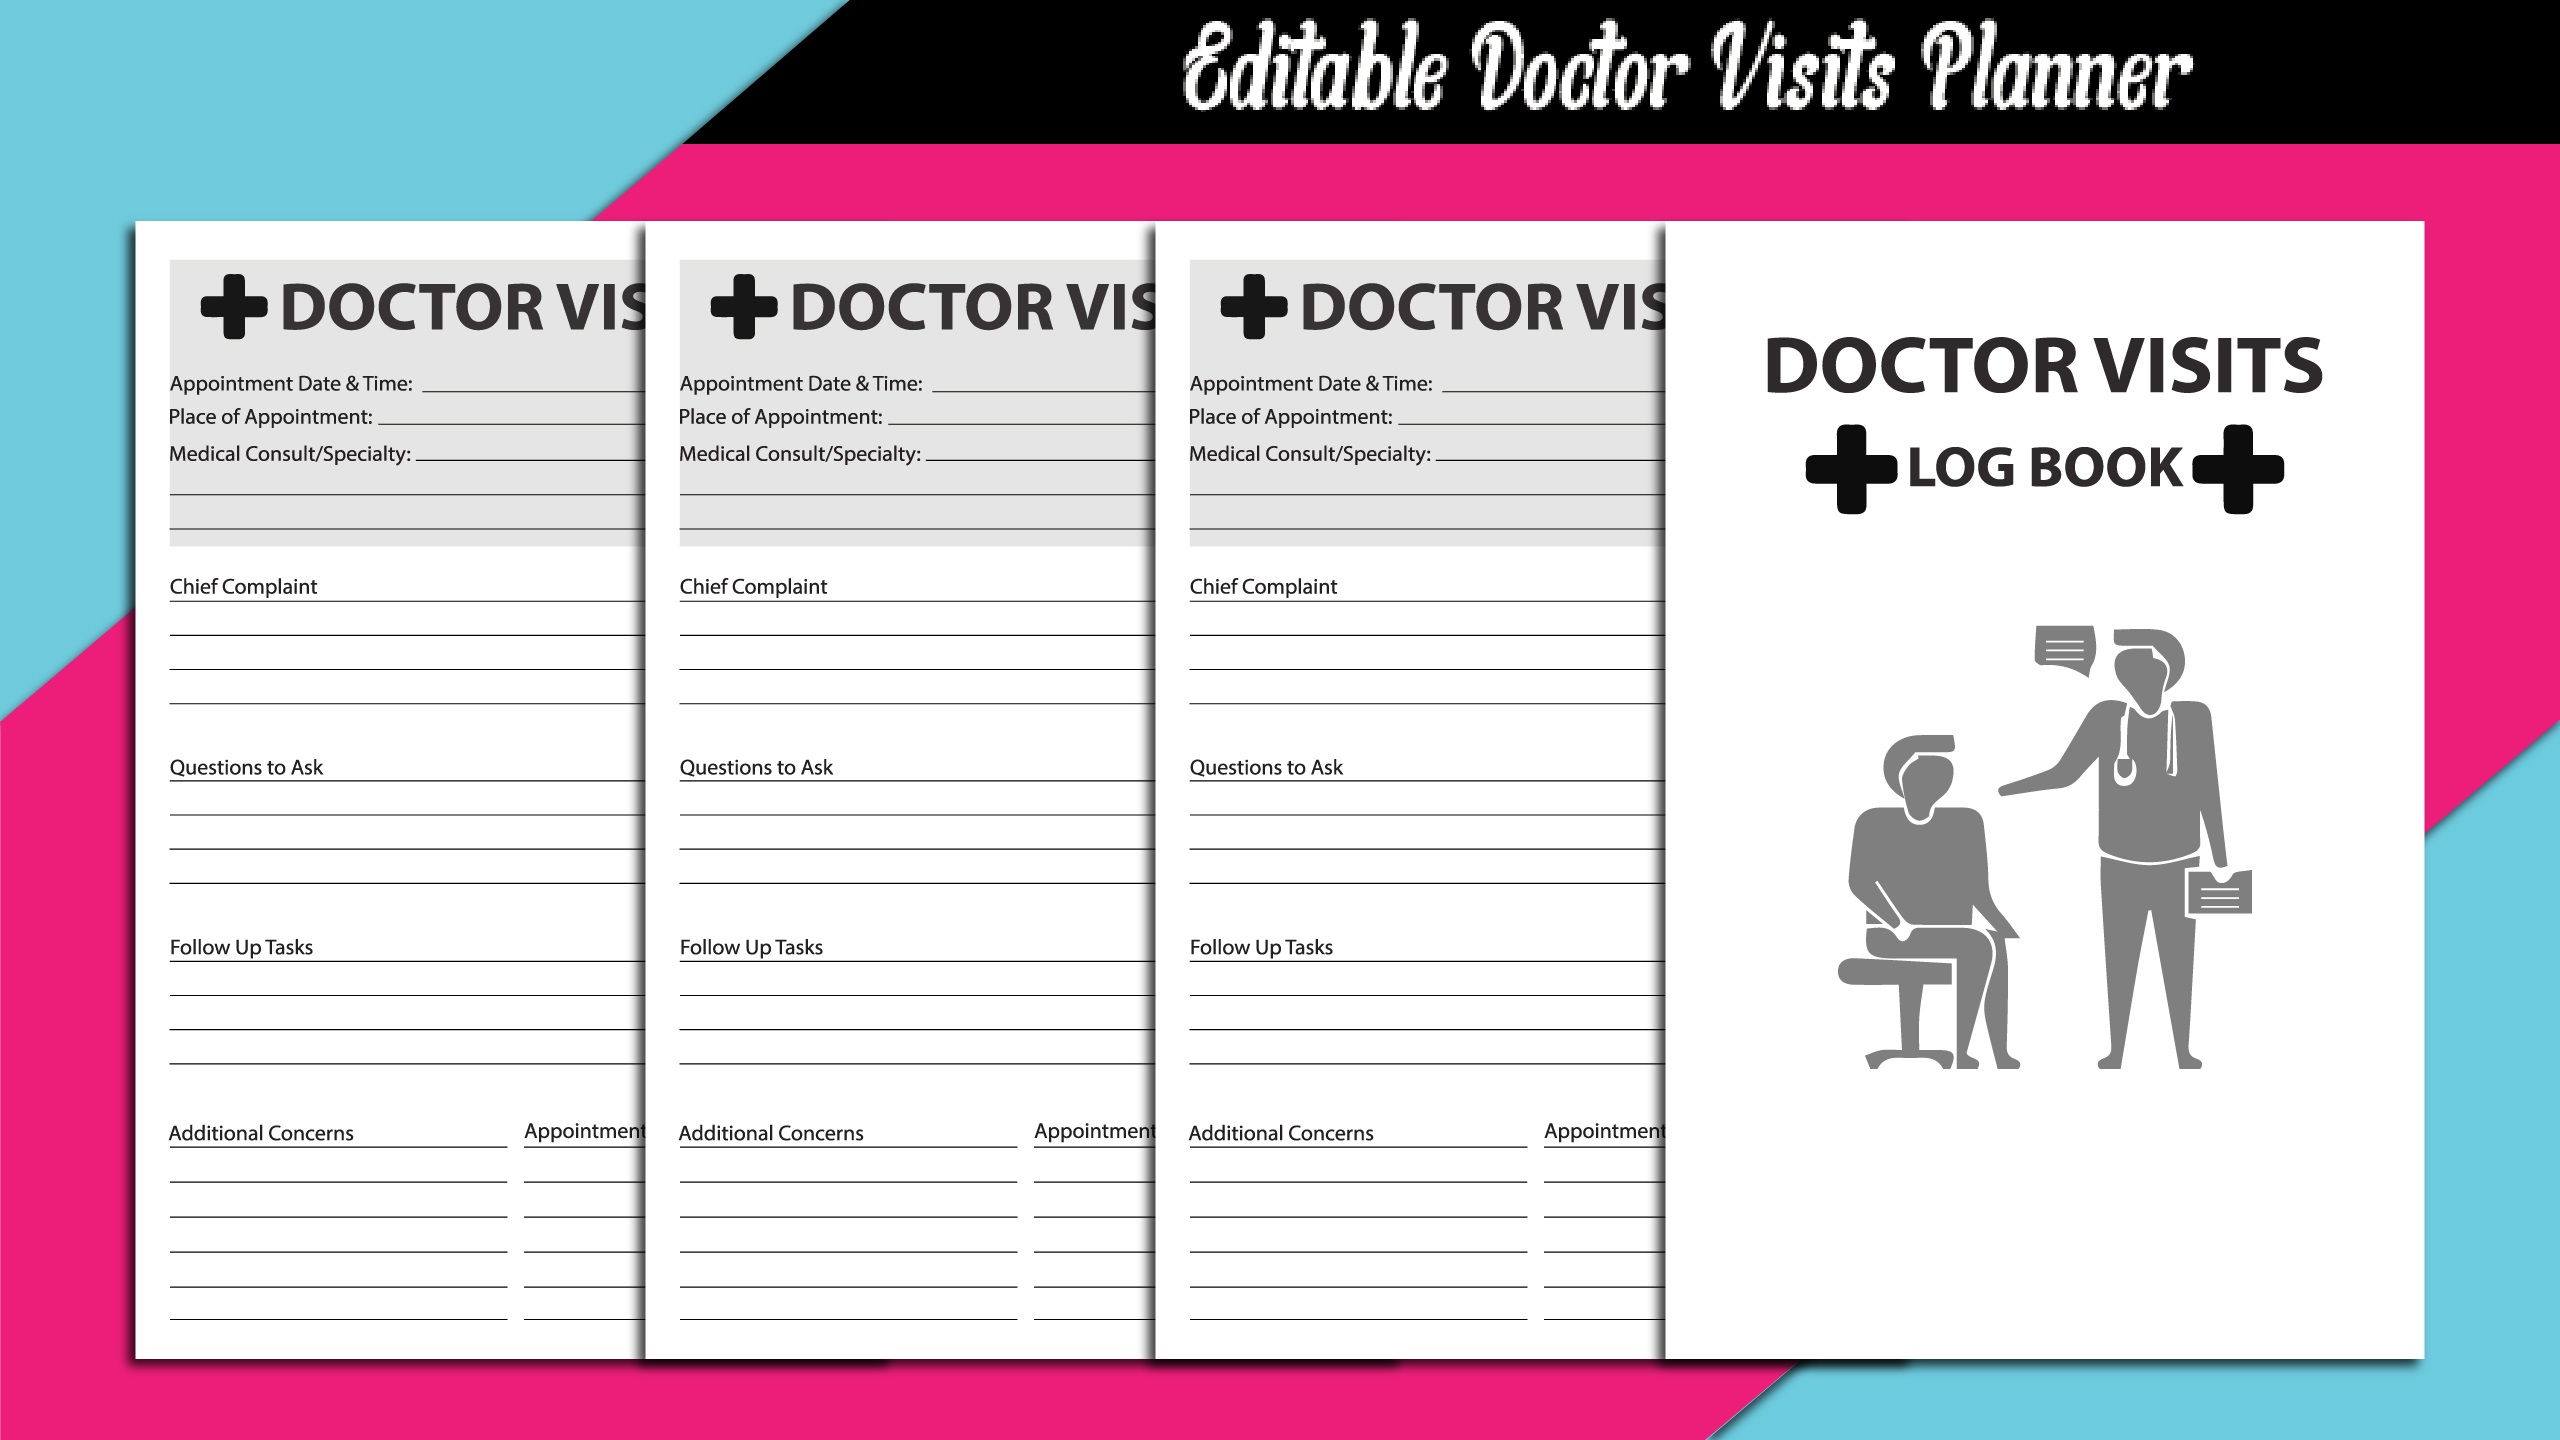 Doctor Visit Editable Log Book Planner facebook image.